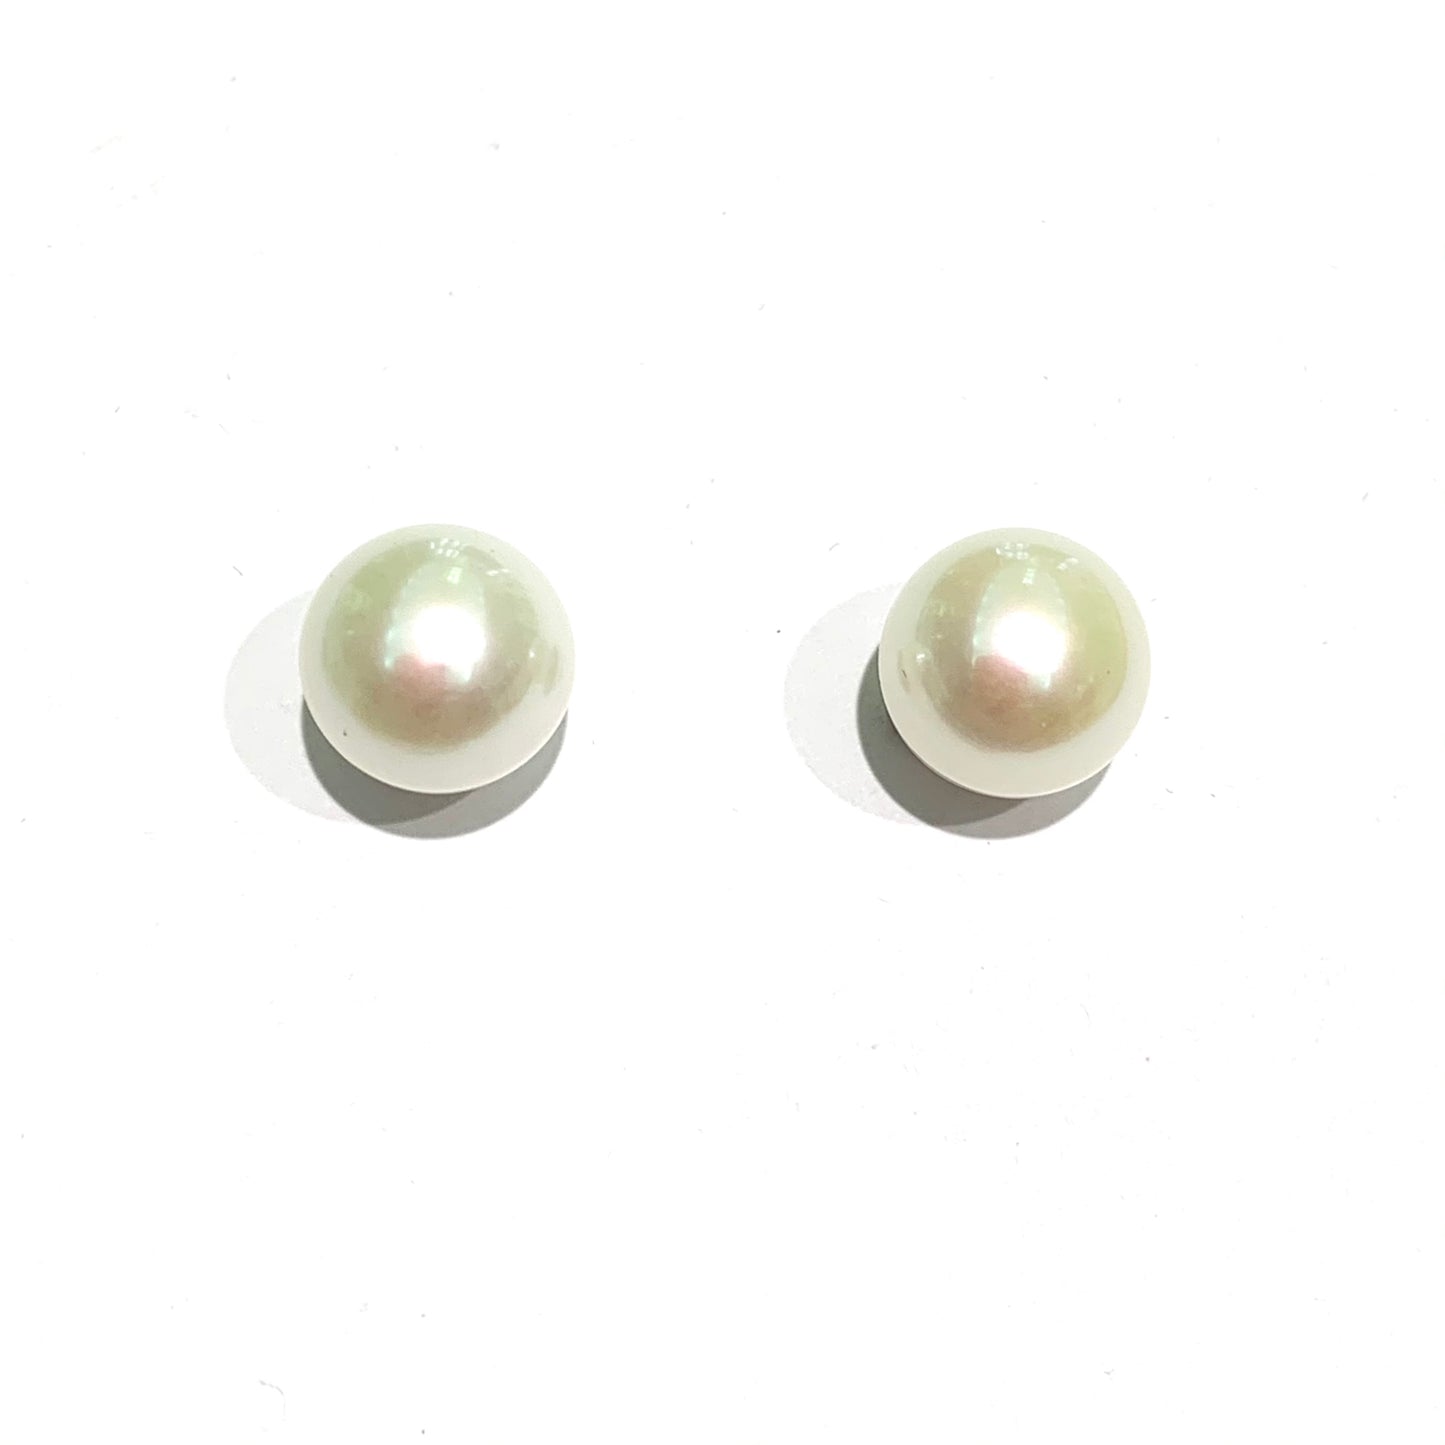 Orecchini in oro bianco 18kt con perle coltivate.  Dimensione perla 0,8 cm.  Chiusura con farfalline.  Spedizione gratuita con confezione regalo. 